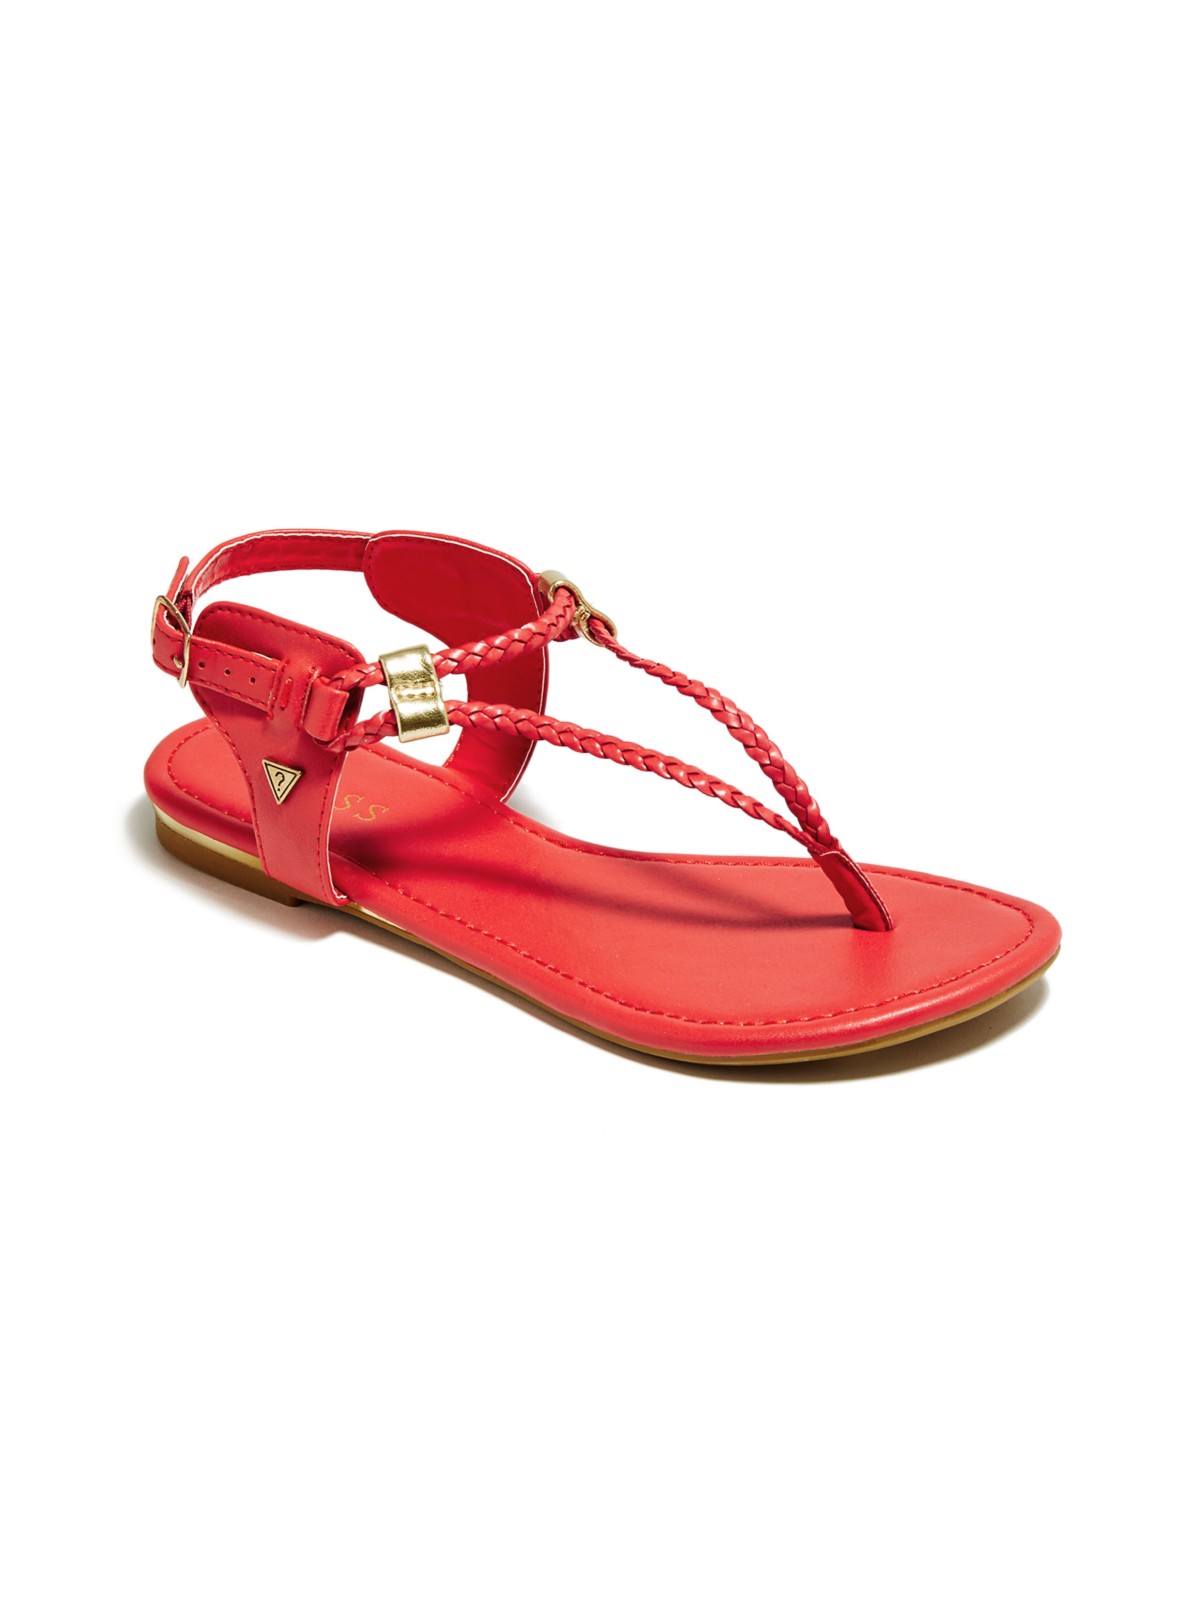 GUESS KAYLA Braided Flat Sandals | eBay